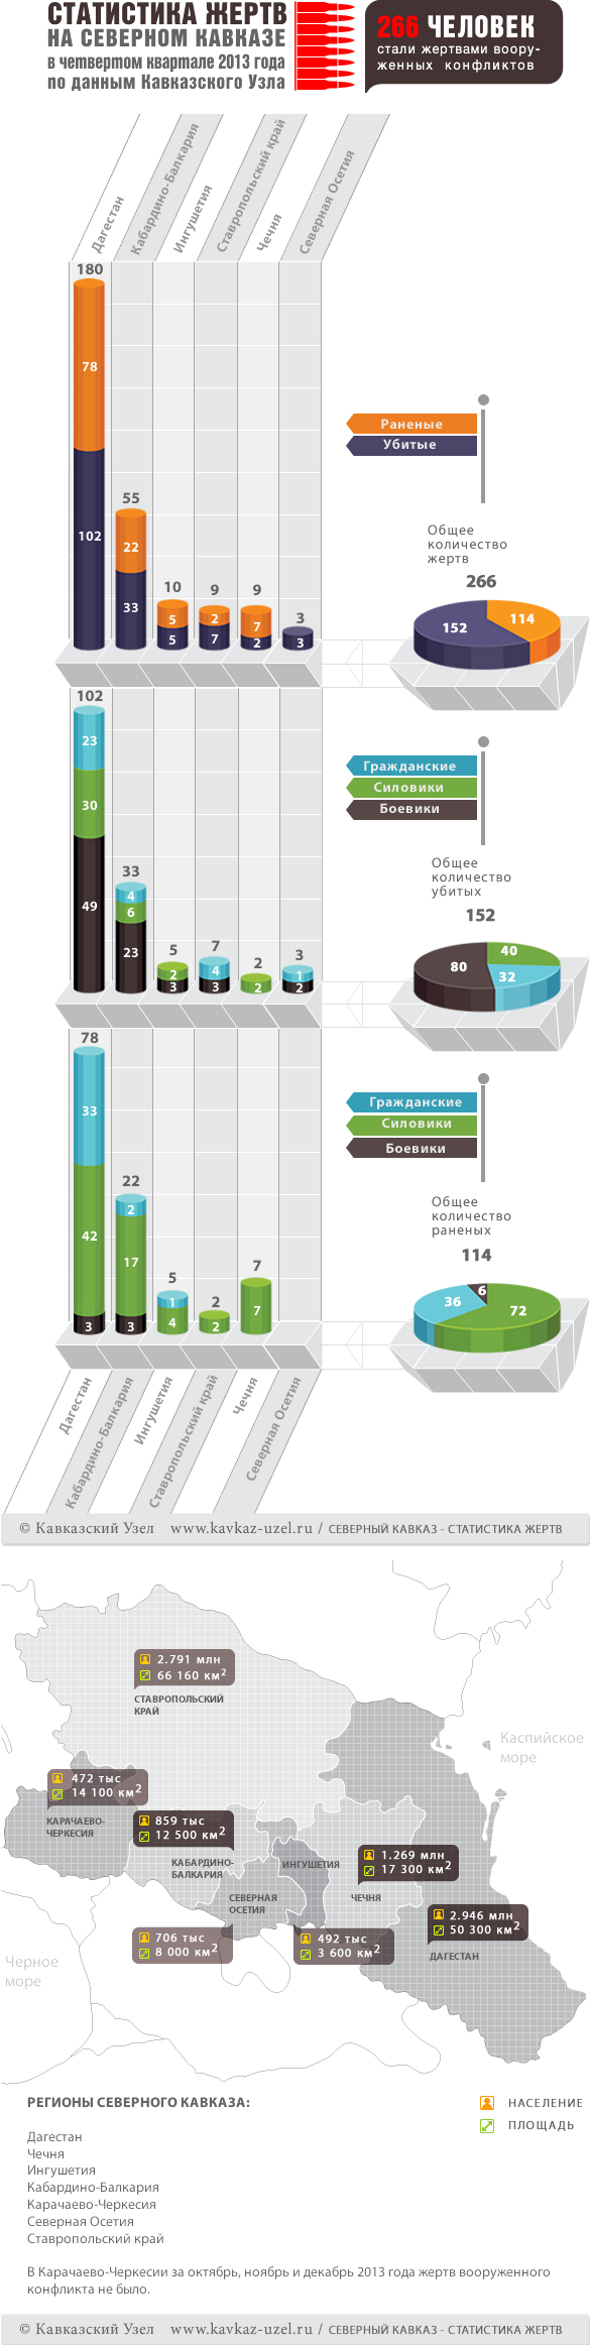 Инфографика. Статистика жертв на Северном Кавказе в четвертом квартале 2013 года по данным Кавказского узла 